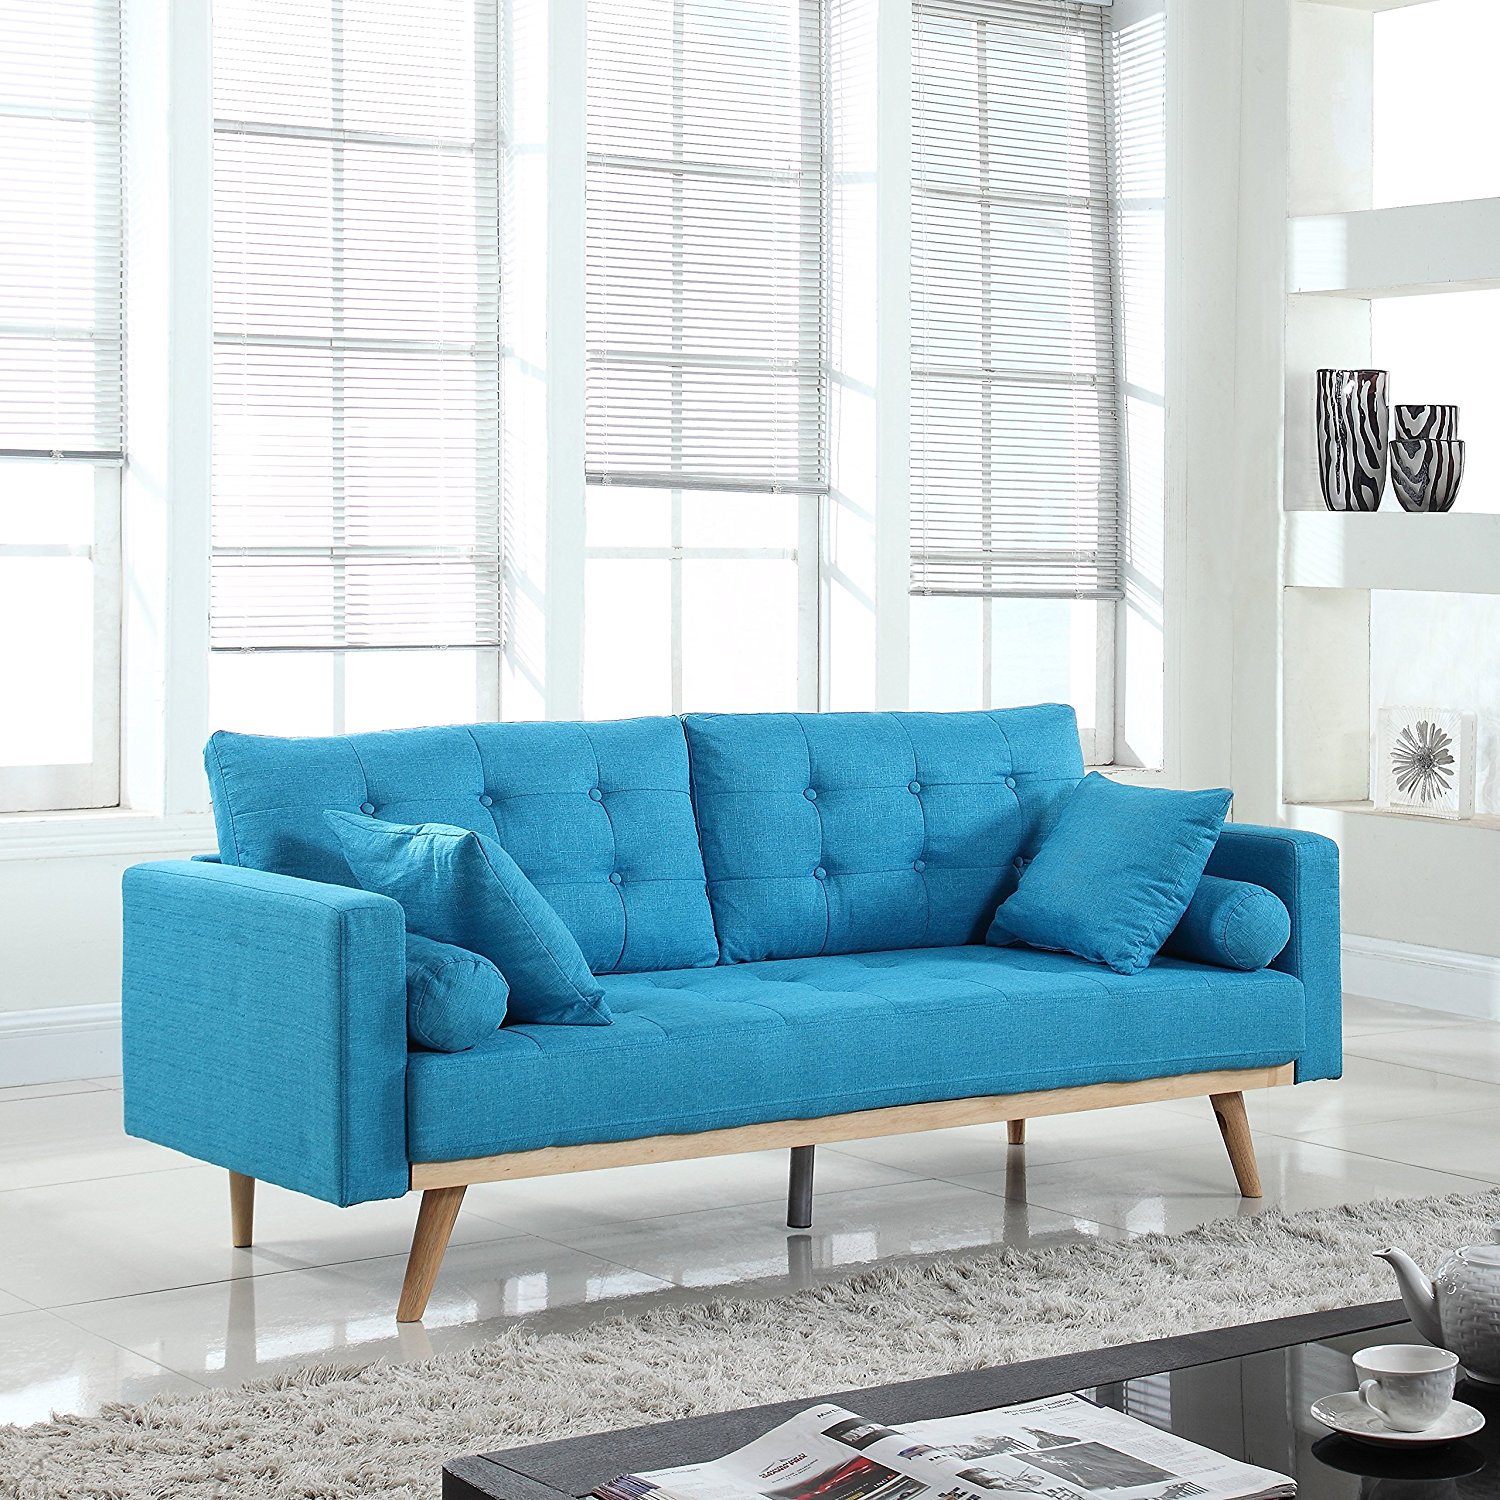 Μπλε καναπές λακωνικού σχεδιασμού